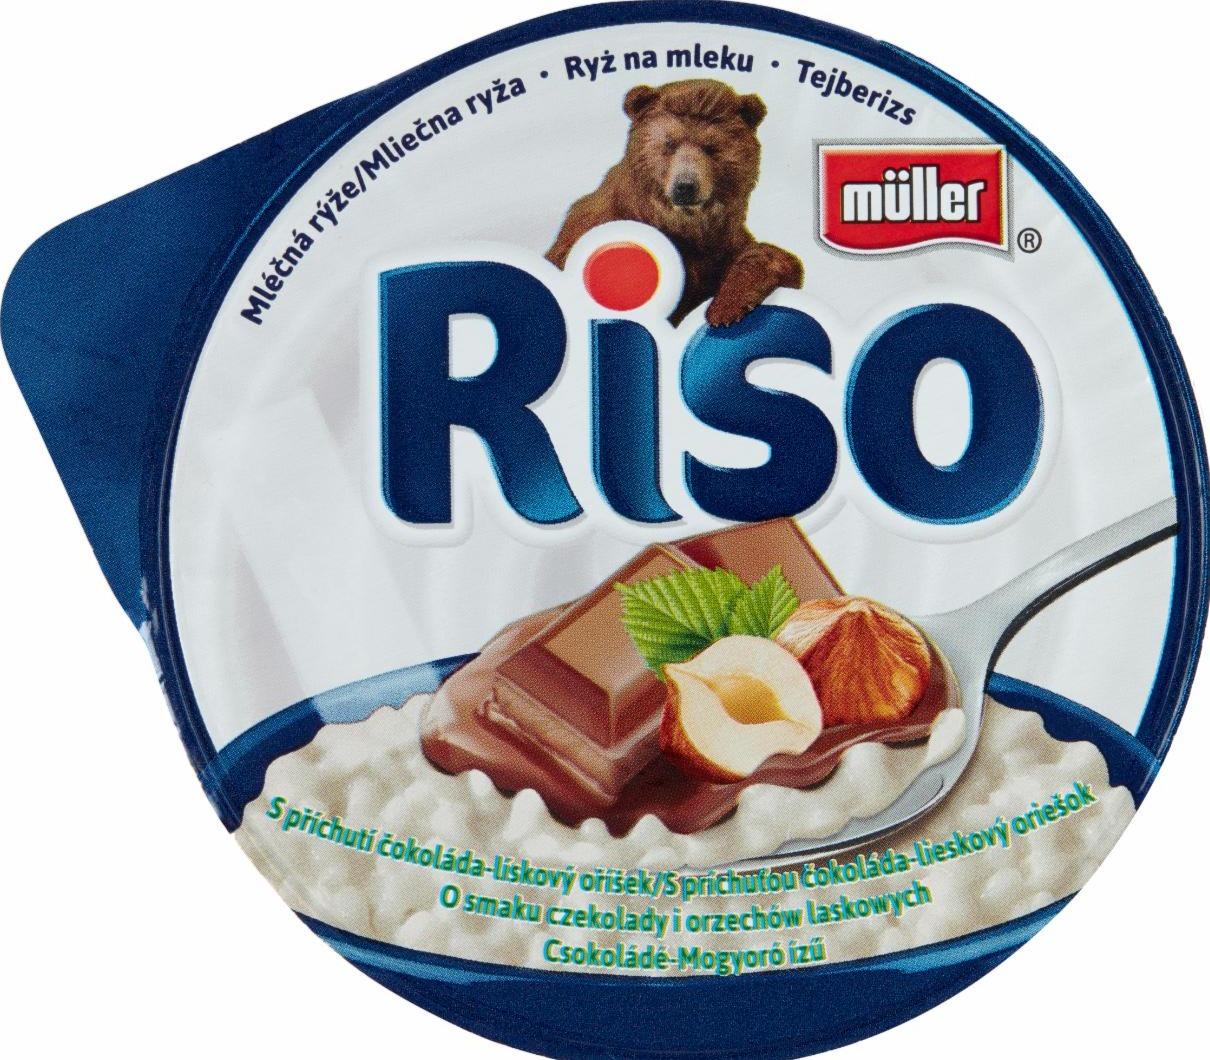 Képek - Riso csokoládé-mogyoró ízű tejberizs Müller